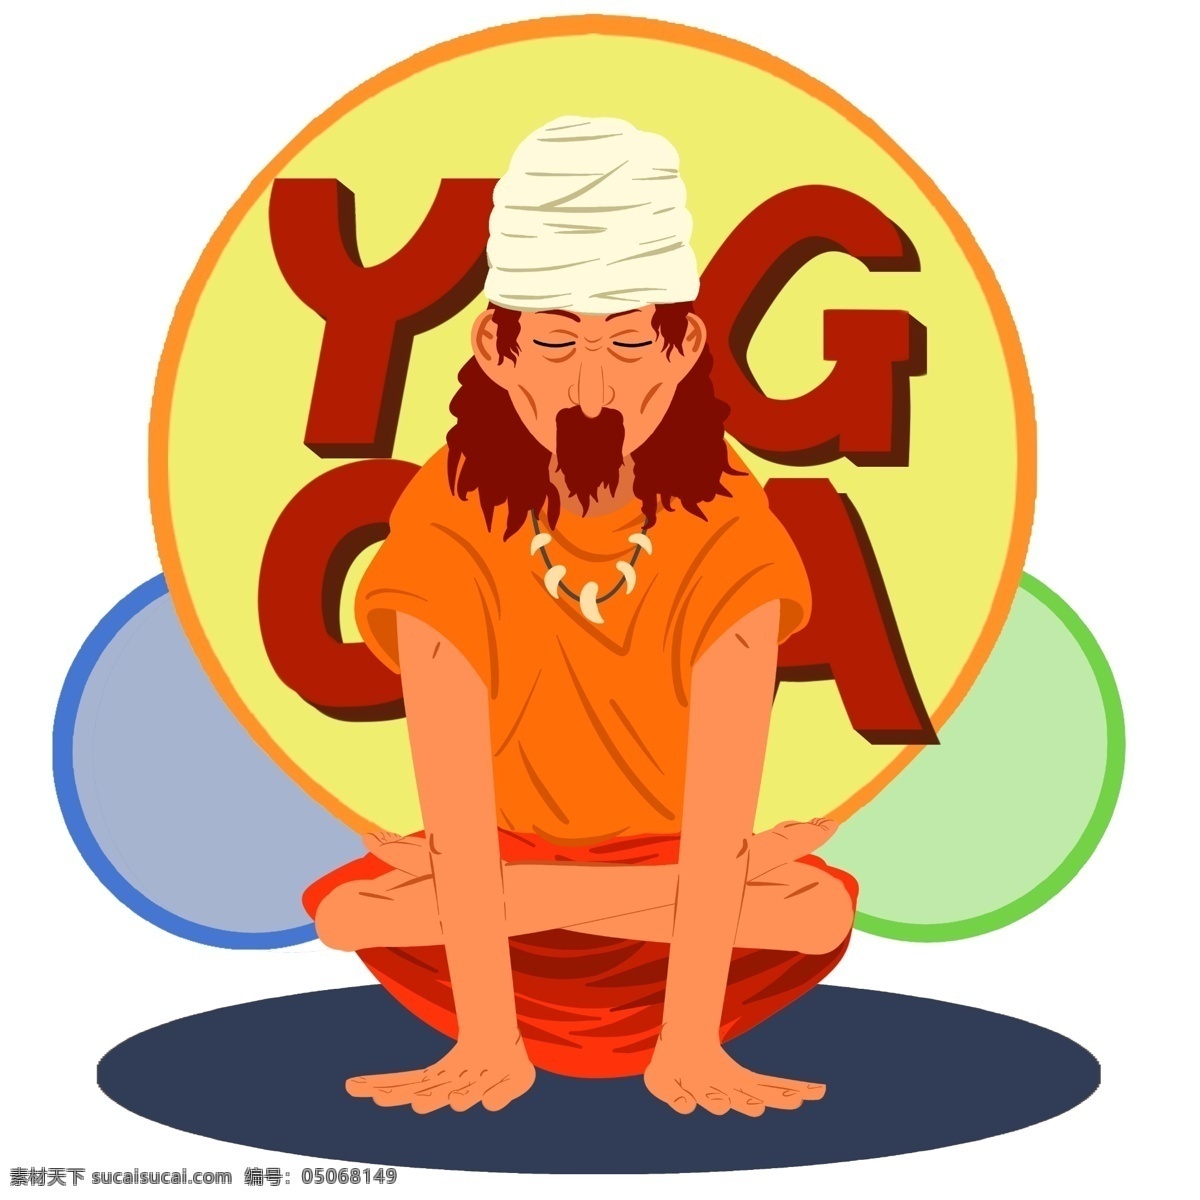 卡通 瑜伽 健身 人物 插画 手绘健身人物 印度瑜伽术 健身瑜伽 瑜伽操 瑜伽训练 做